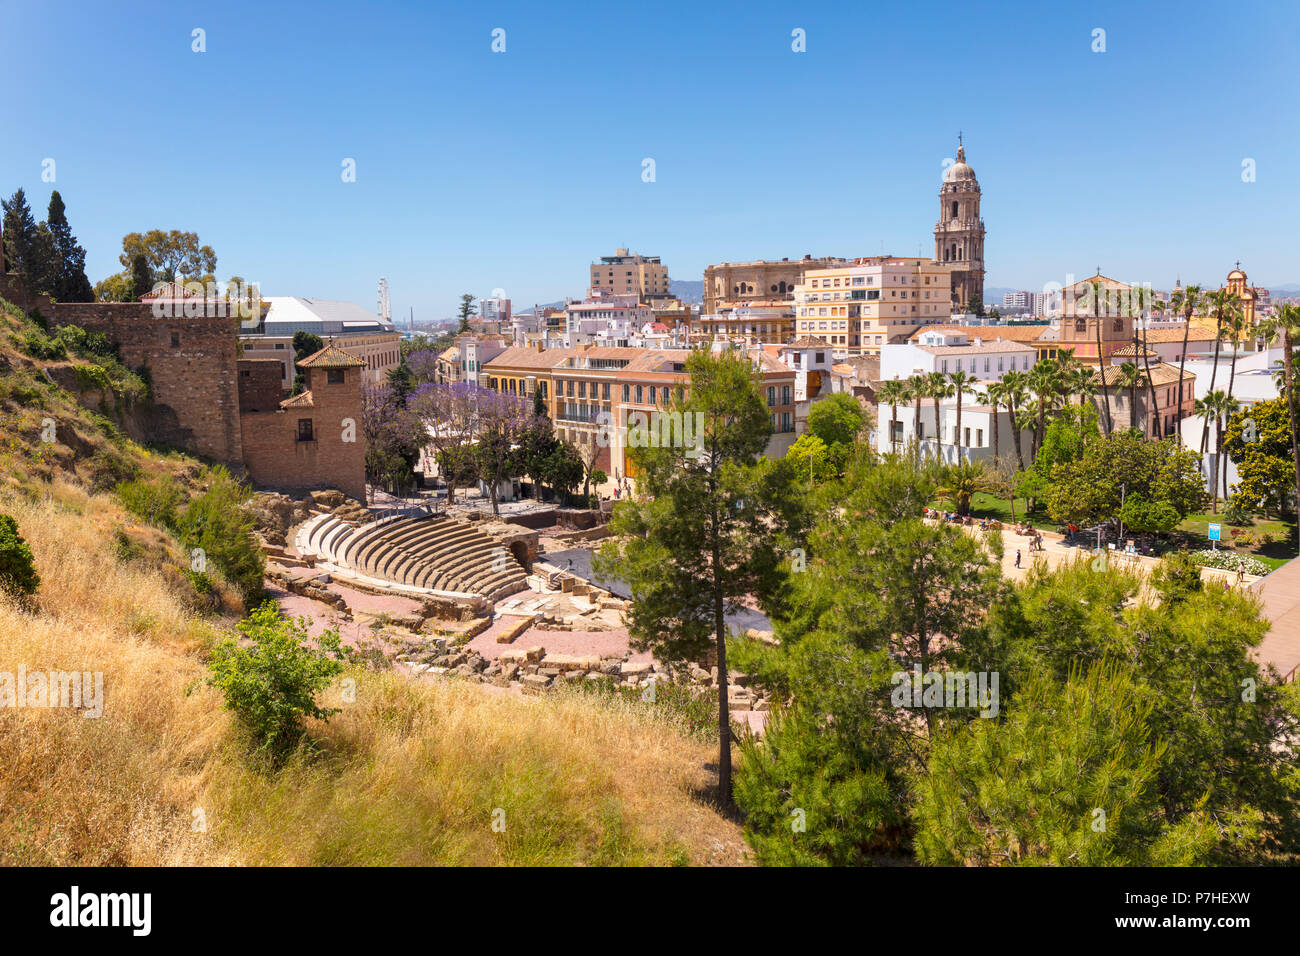 Malaga, Costa del Sol, la province de Malaga, Andalousie, Espagne du sud. Vue sur la ville montrant théâtre romain et de la cathédrale. L'Alcazaba est visible à gauche Banque D'Images